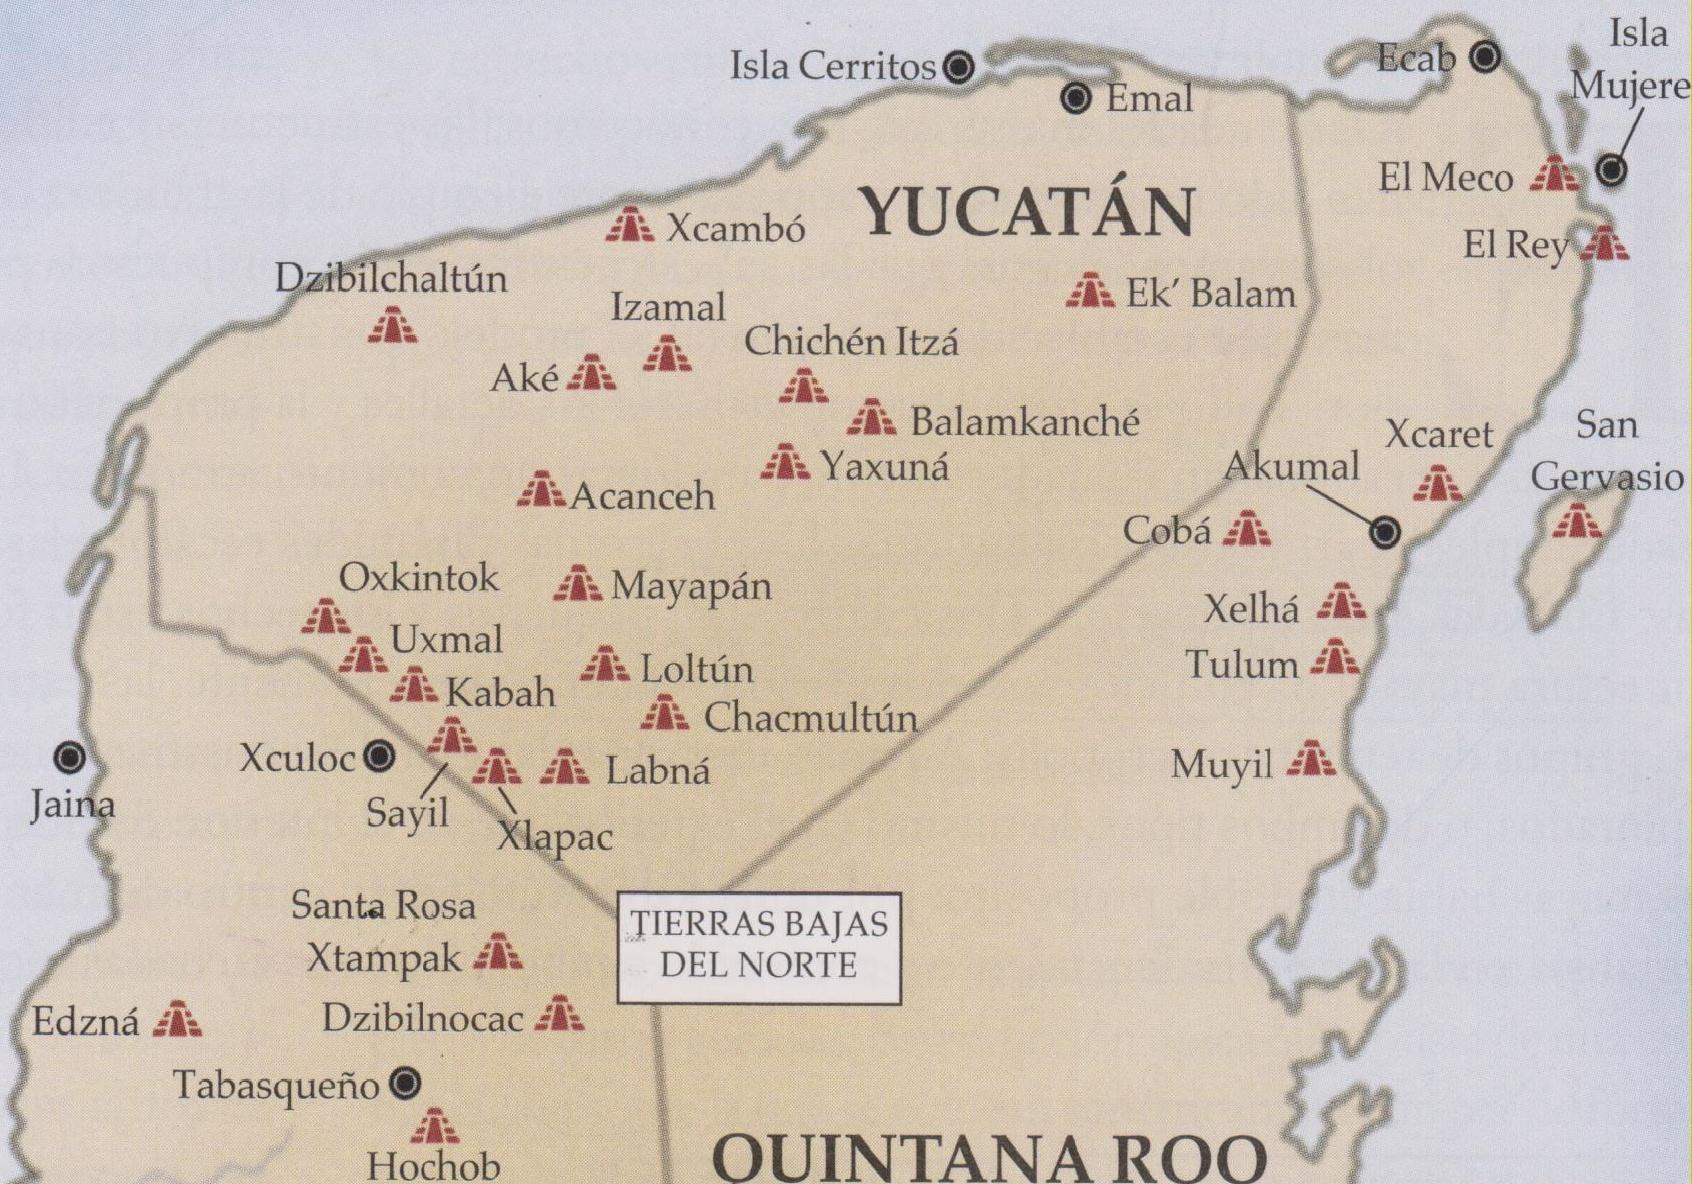 La Zona arquitectónica denominada Puuc Las ciudades mayas más relevantes del estilo Puuc que se encuentran en